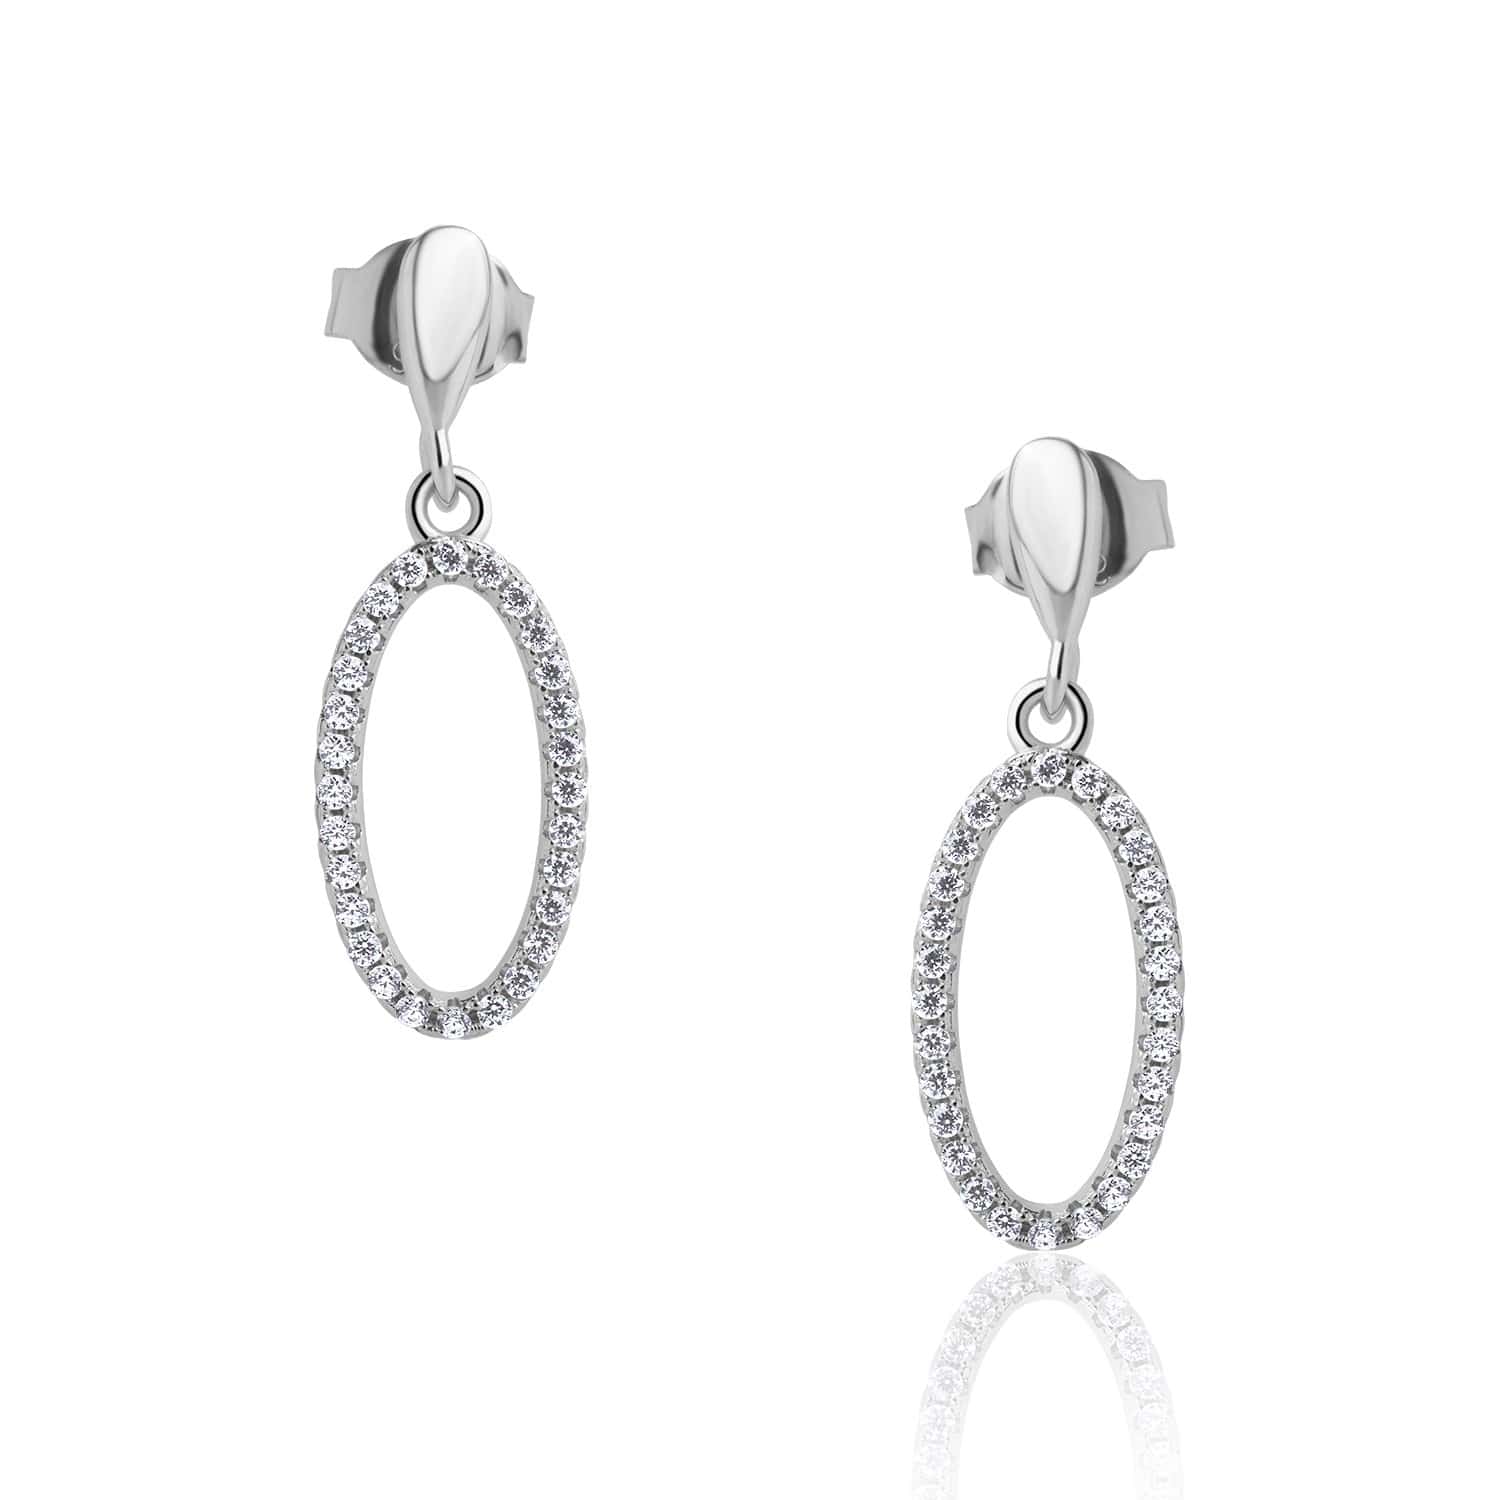 Lynora Jewellery Earring Sterling Silver / Clear Eclipse Earrings Sterling Silver